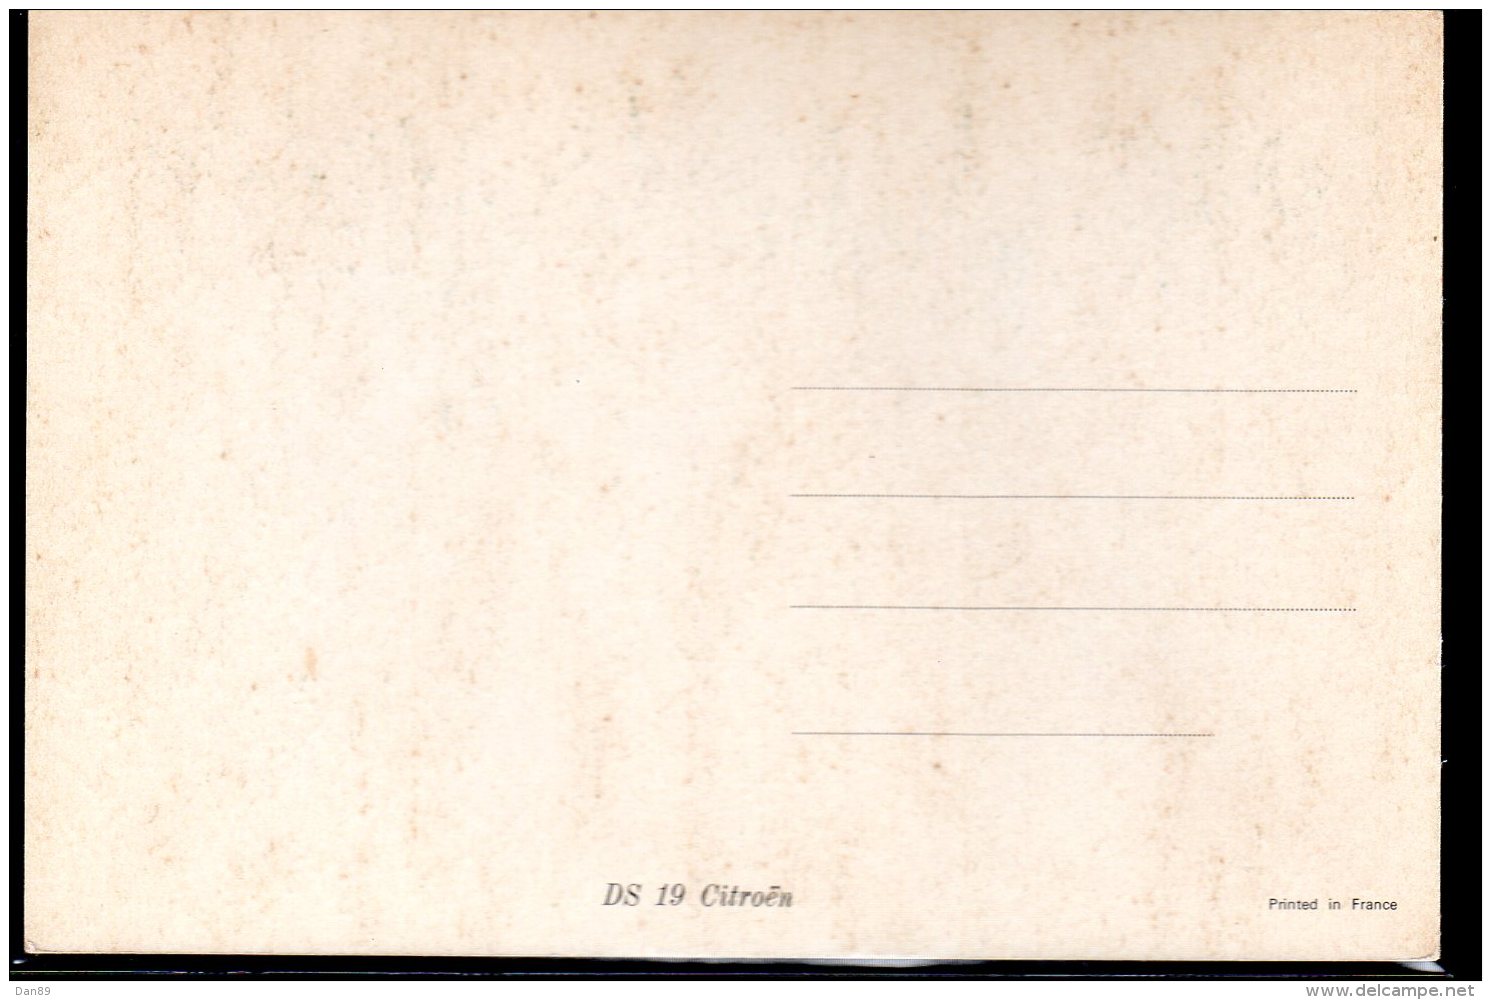 770 - Citroen DS 19 Chambord V.1966 - Carte Postale Originale Publicité USA - Original Dealer Advertising Postcard - Voitures De Tourisme